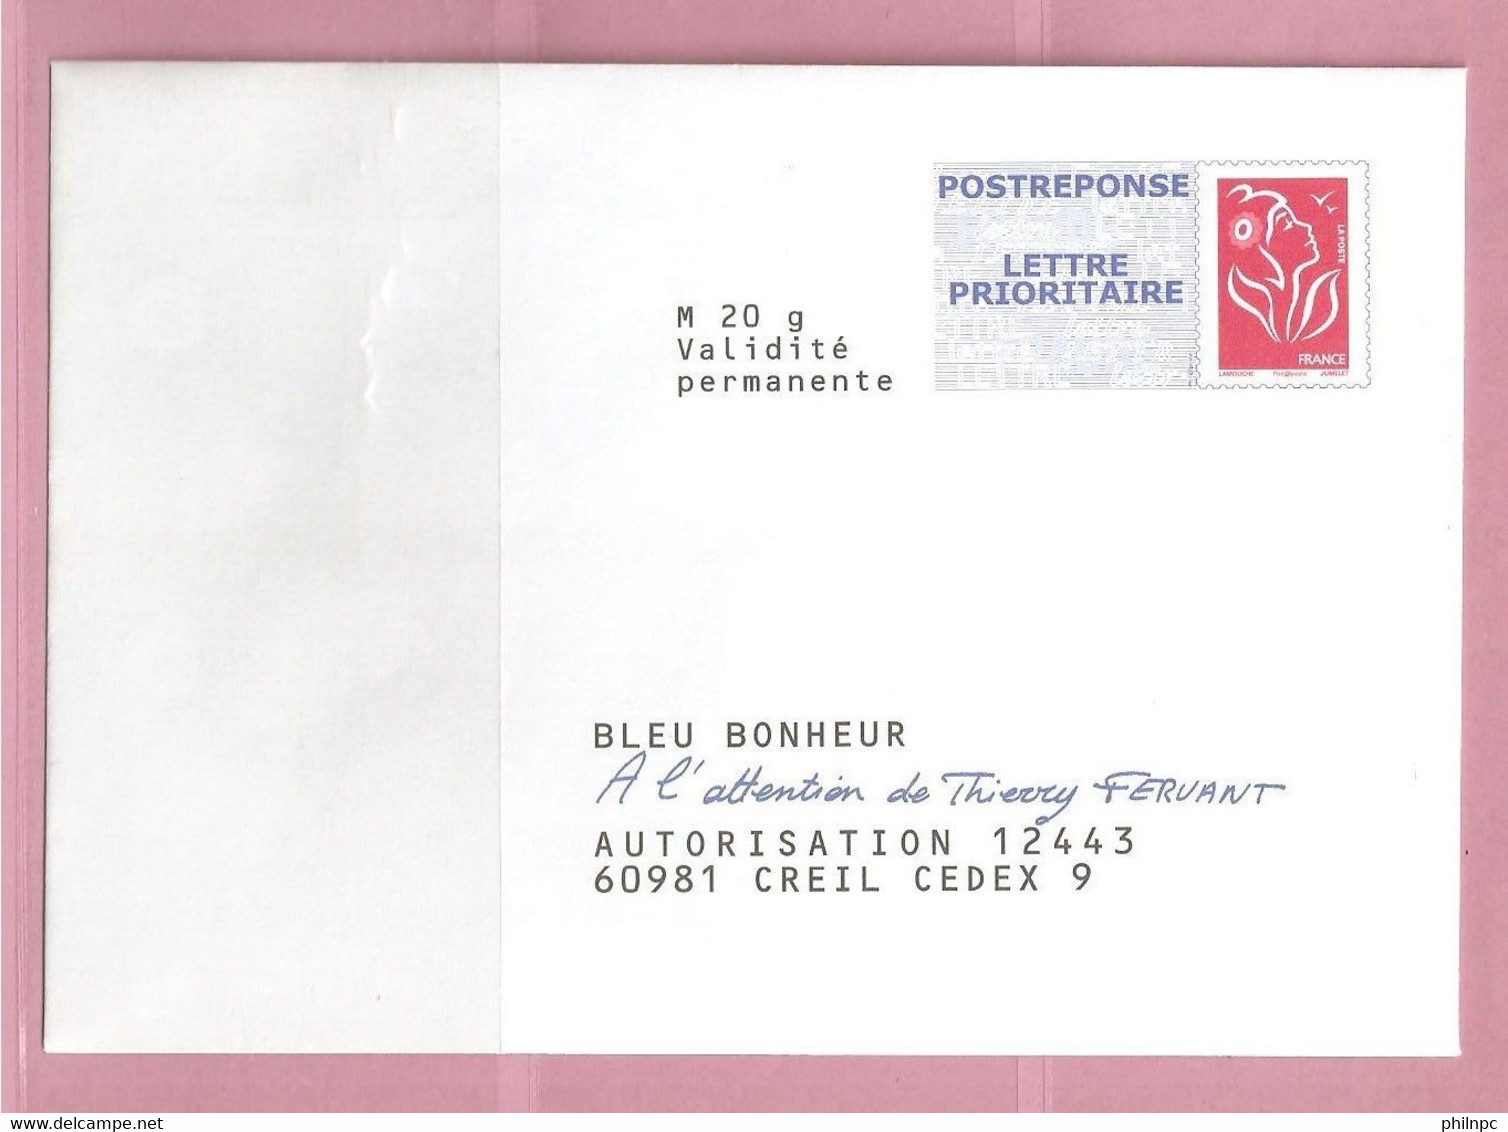 France, Prêt à Poster Réponse, 3734A, Postréponse, Bleu Bonheur, Marianne De Lamouche - Prêts-à-poster: Réponse /Lamouche